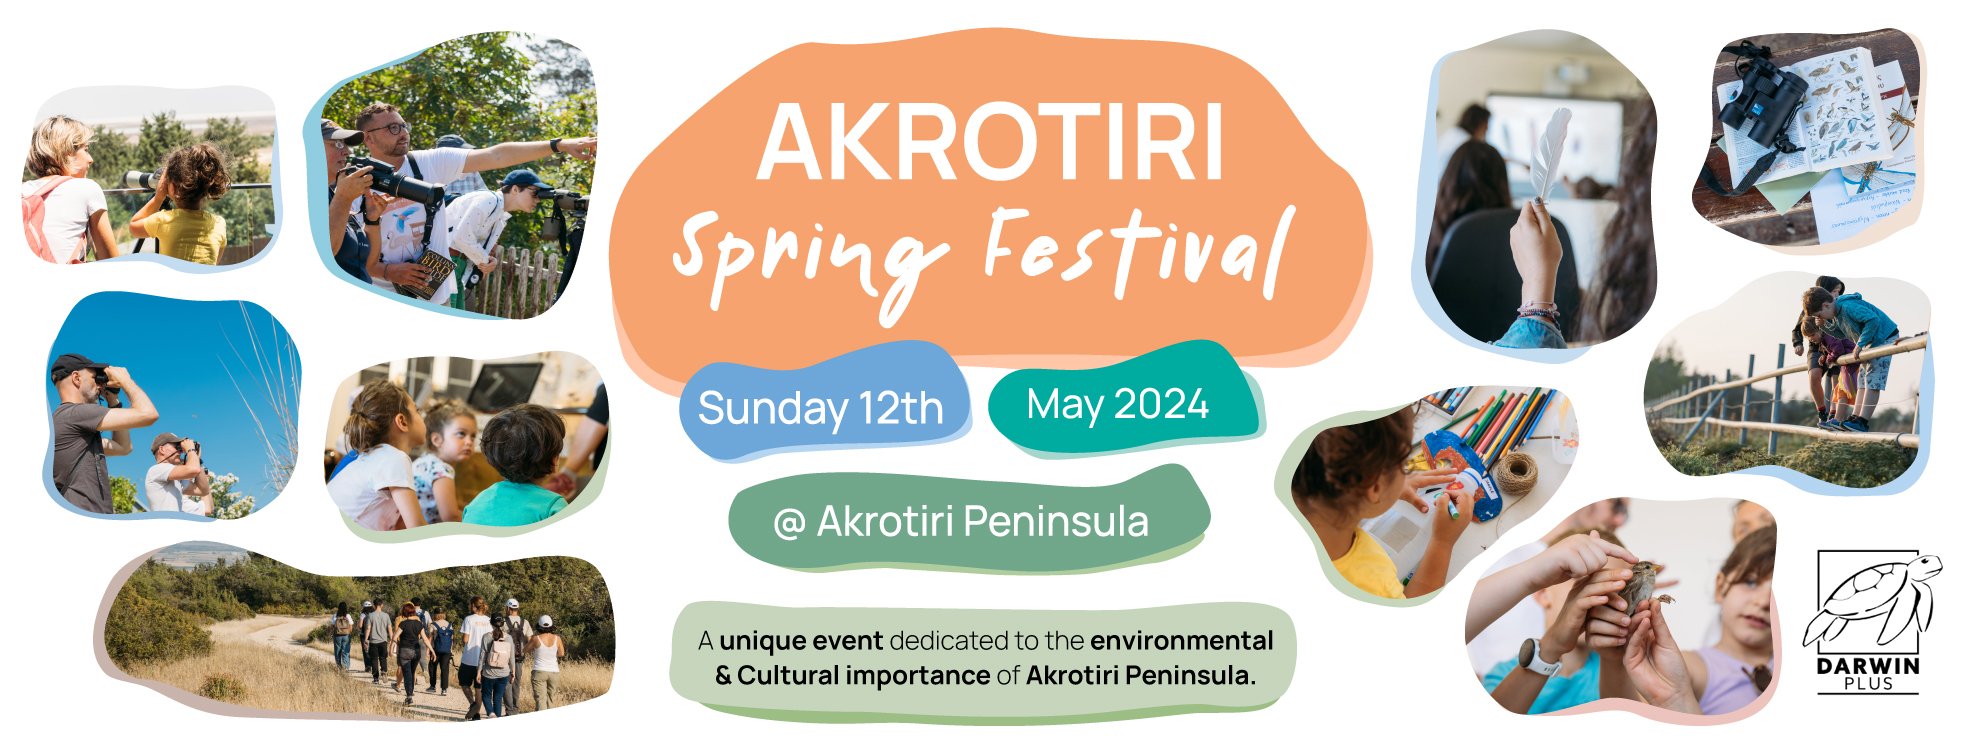 Second Akrotiri Spring Festival